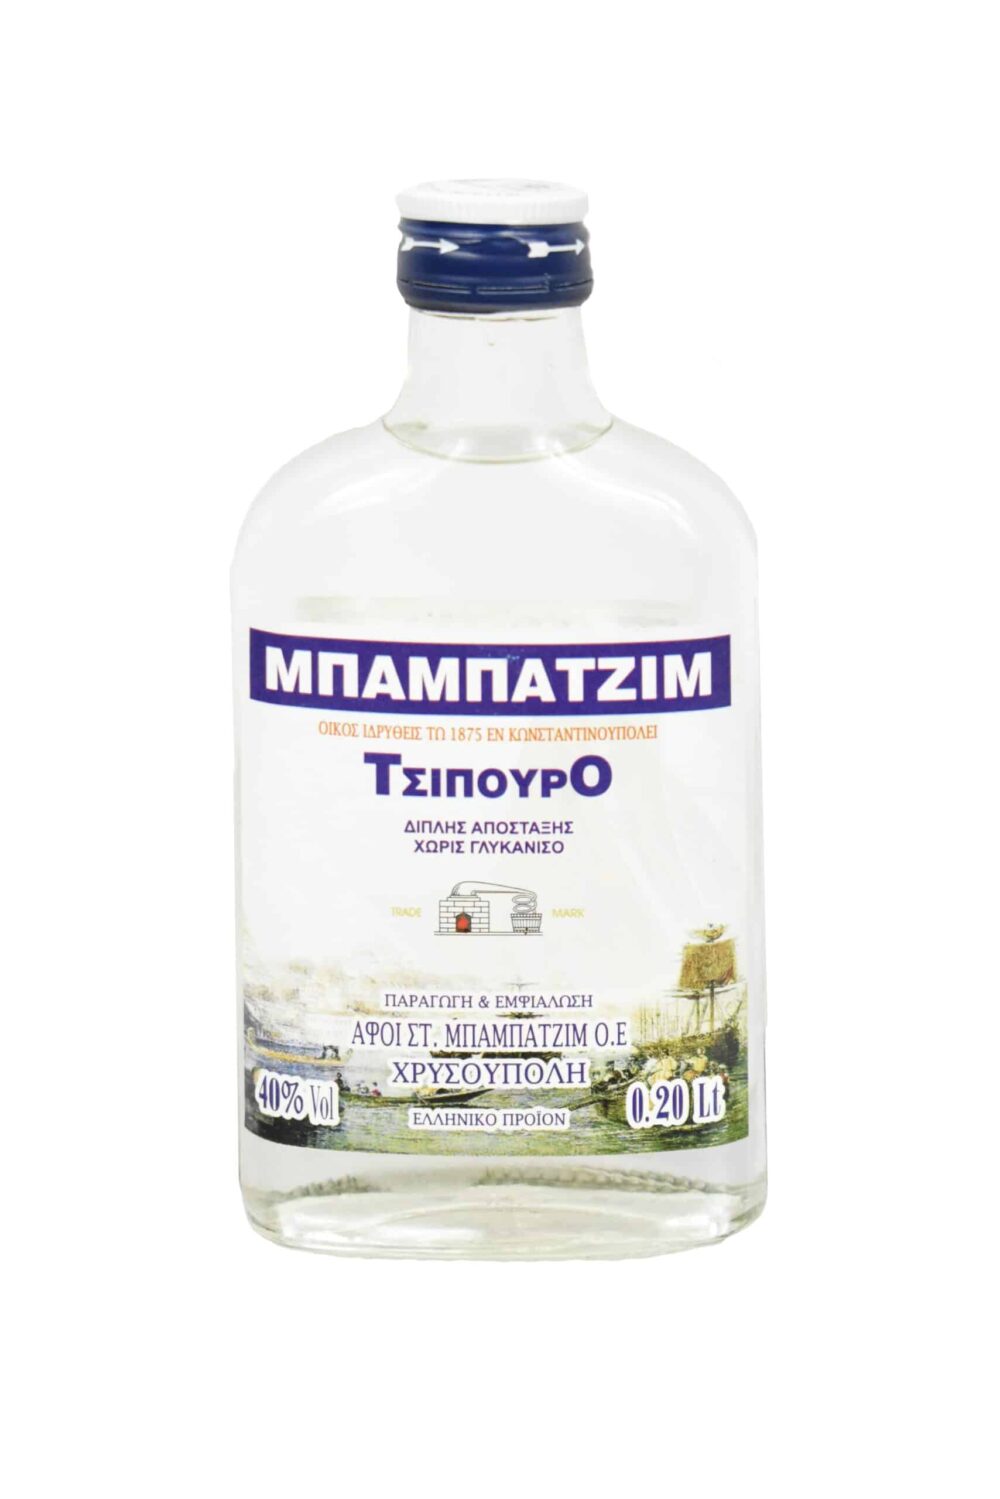 Babatzim tsipouro gehört zu den besten Spirituosen Griehenlands! Probieren Sie den bei Filareti aus!